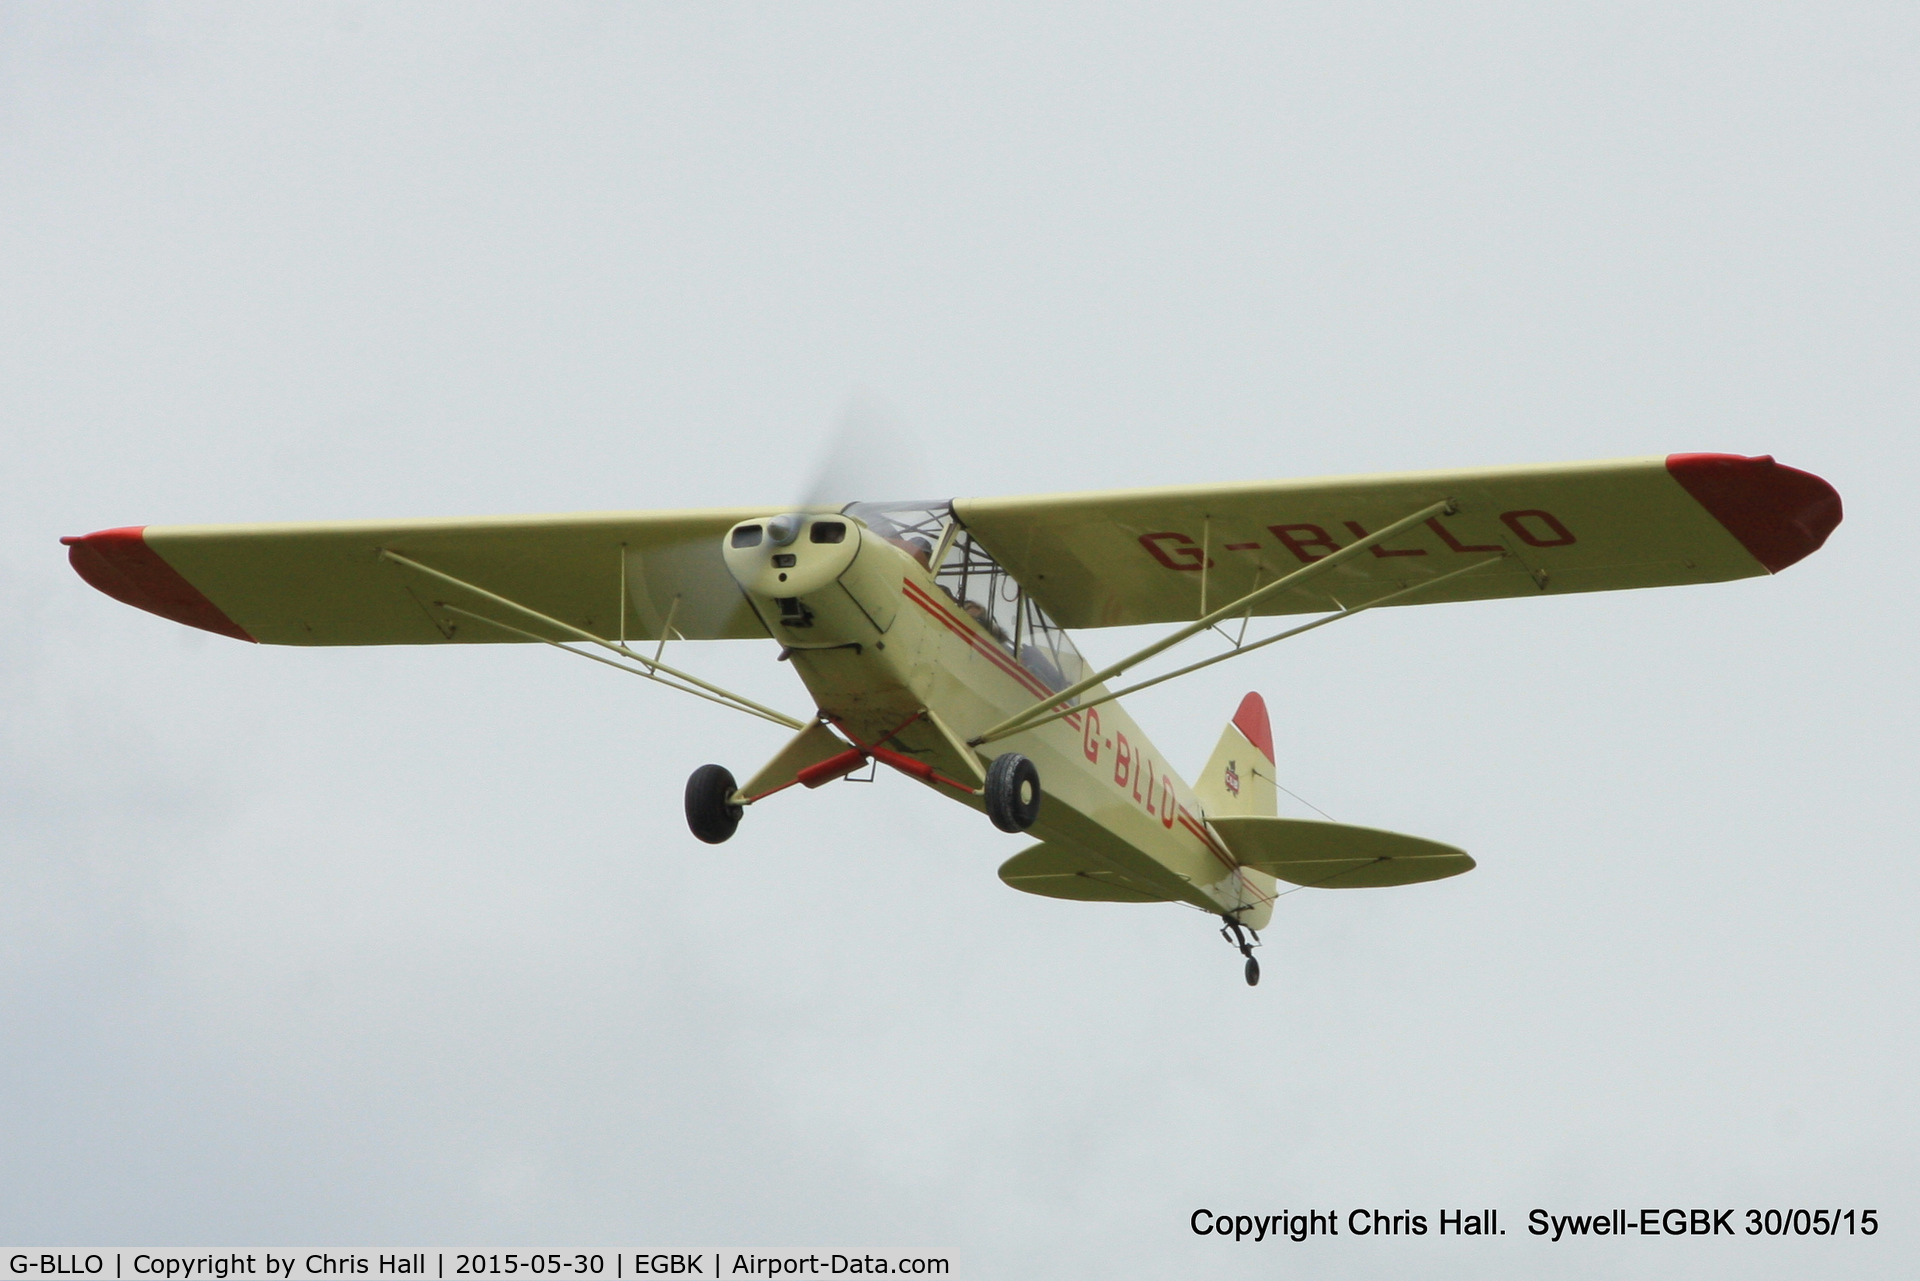 G-BLLO, 1953 Piper L-18C Super Cub (PA-18-95) C/N 18-3099, at Aeroexpo 2015